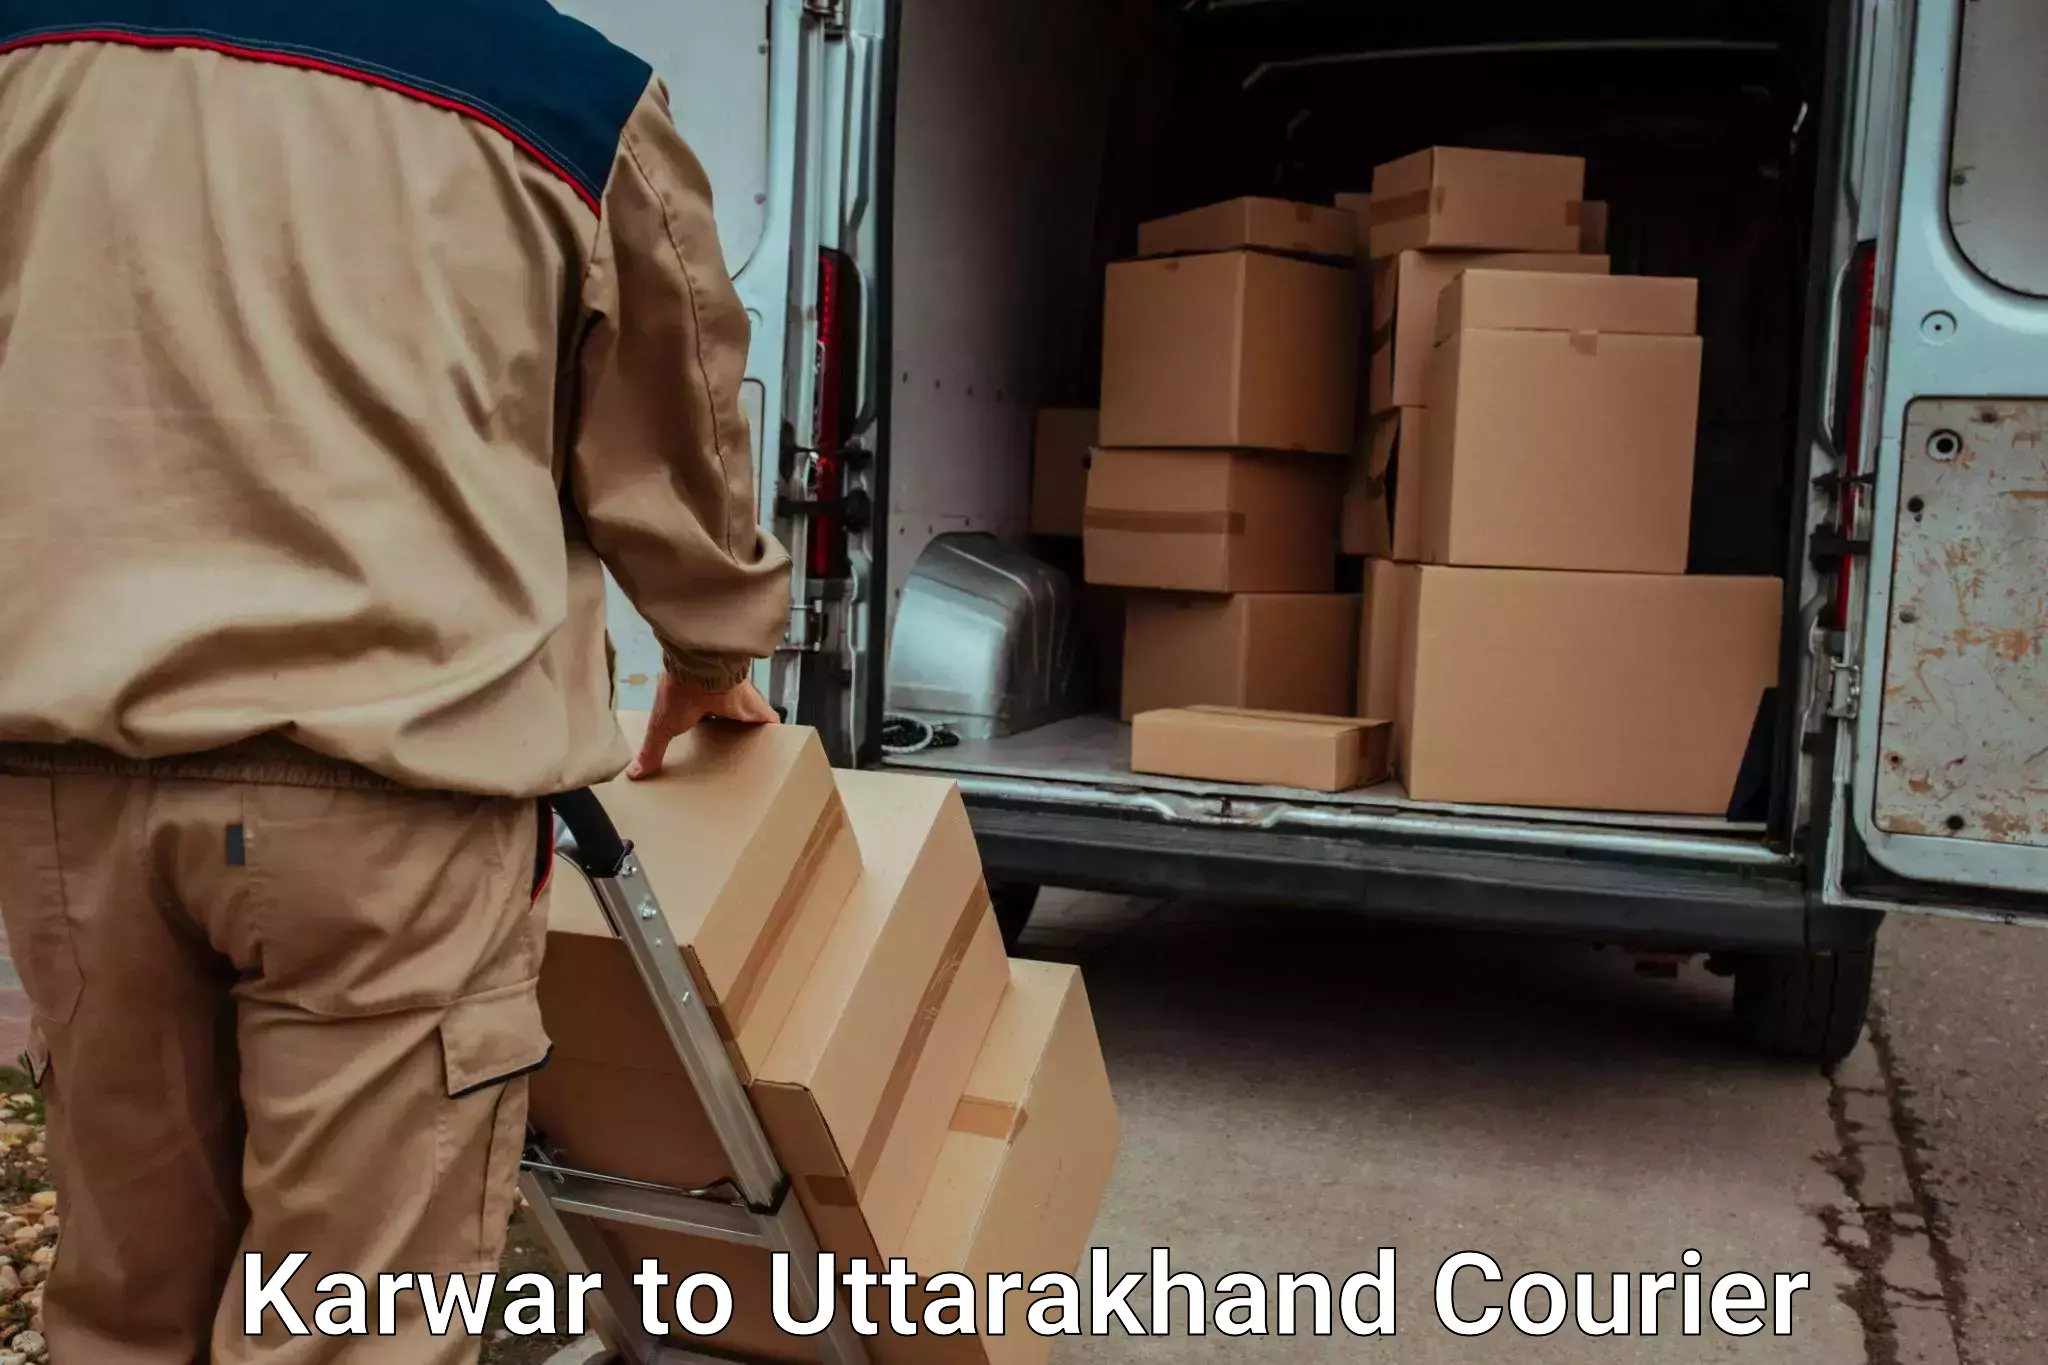 Luggage shipment strategy Karwar to IIT Roorkee